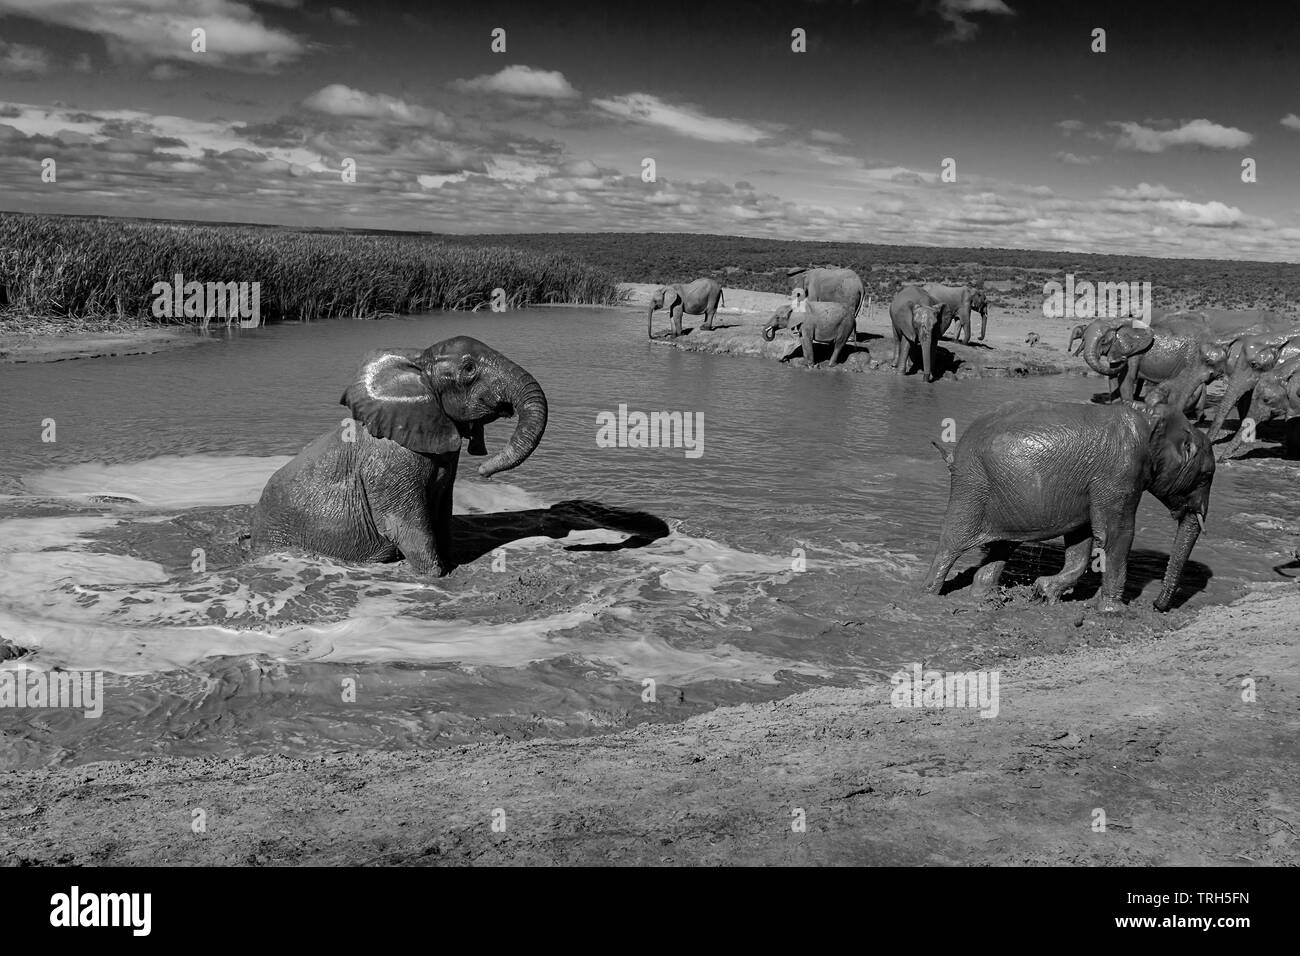 Groupe d'éléphants (Loxodonta Africana) nager et jouer à un barrage pour se rafraîchir dans la chaleur de l'été. Addo Elephant Park Afrique du Sud Banque D'Images